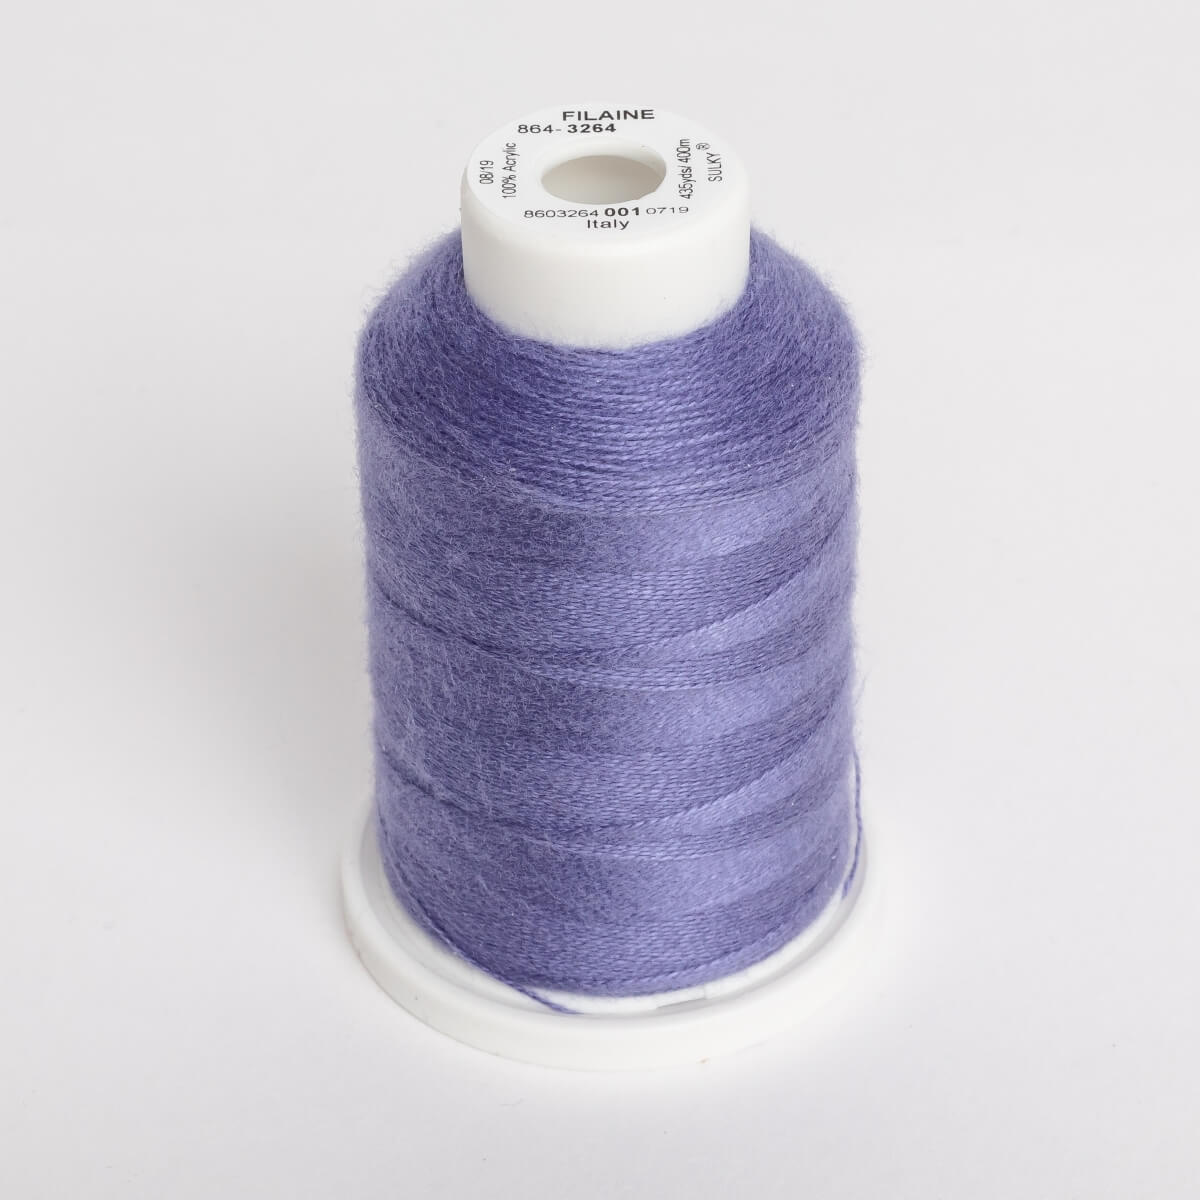 SULKY FILAINE 12, 400m Maxi Spulen - Farbe 3264 Violet